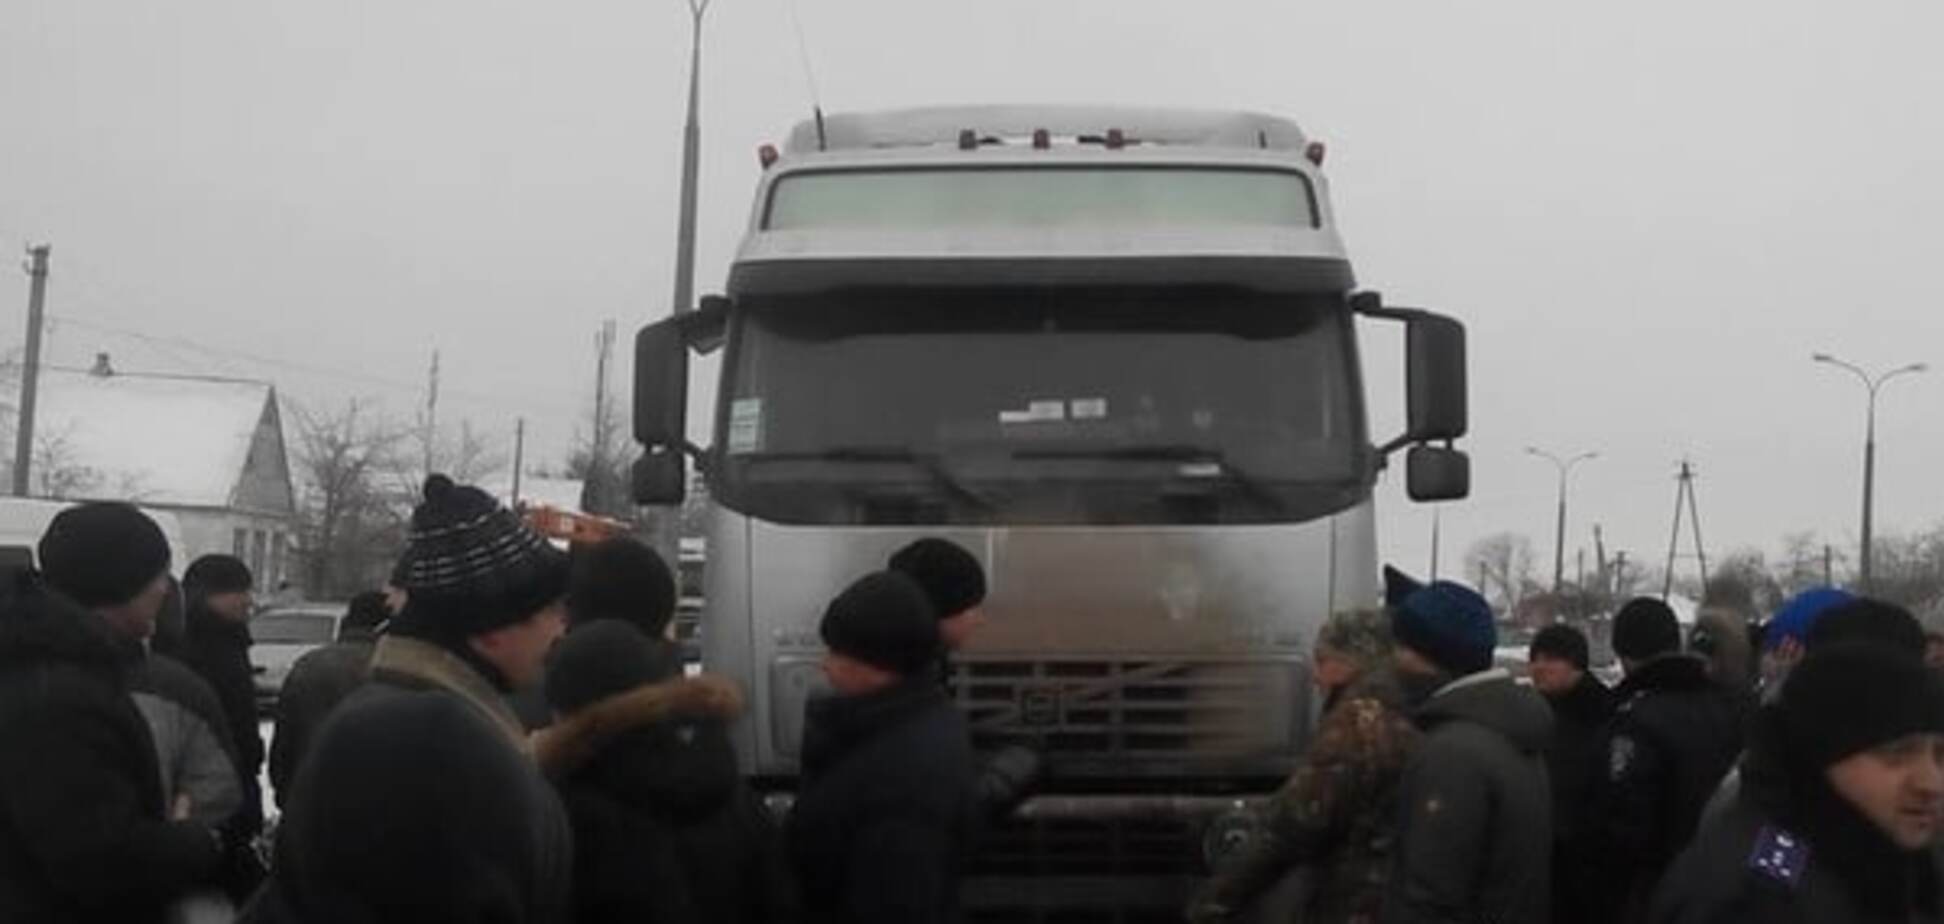 Бунт в Новомосковске: активисты перекрыли трассу Днепропетровск-Донецк из-за 'договорняков' в горсовете